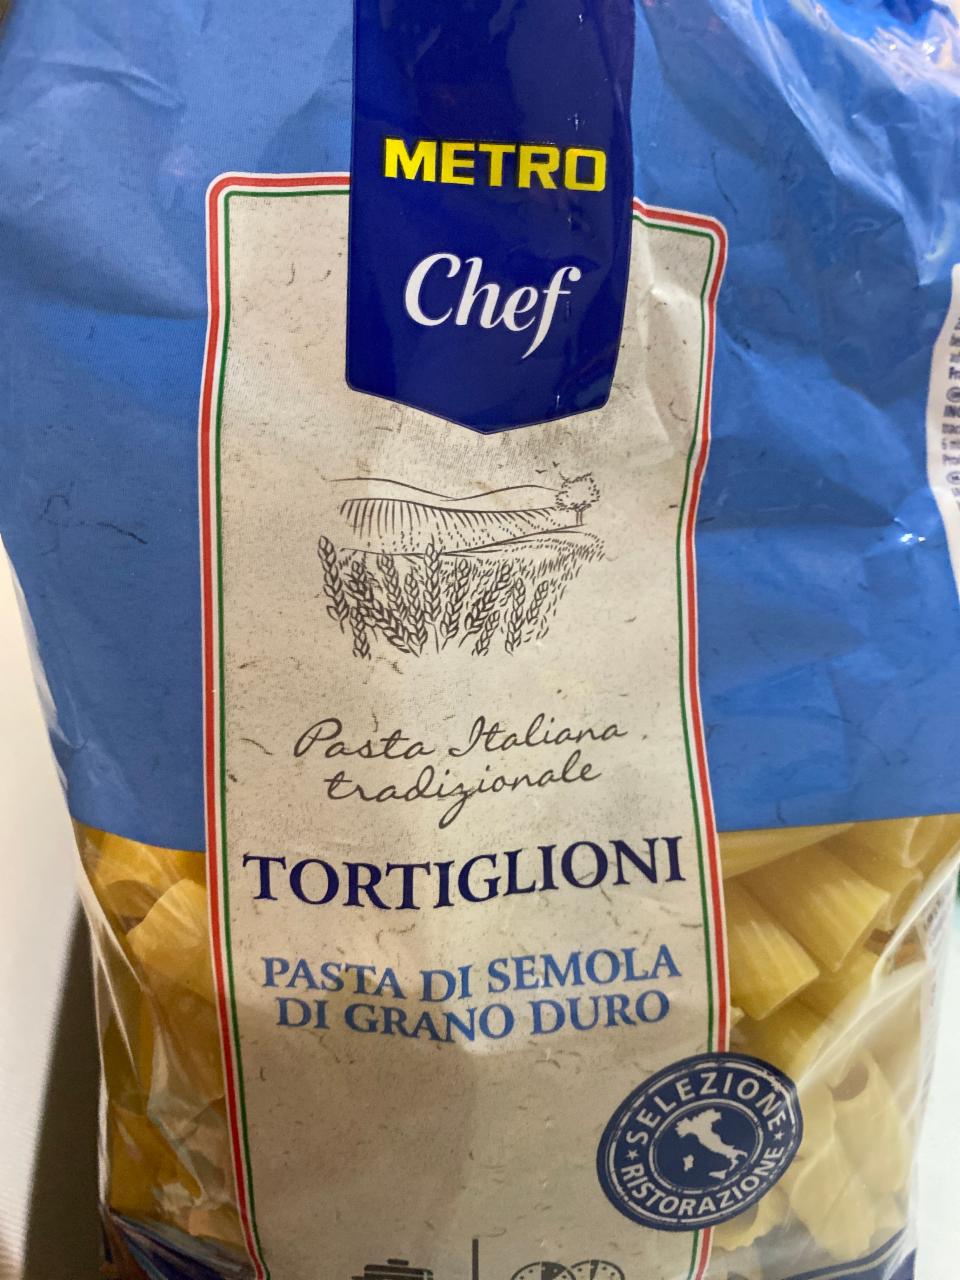 Фото - Макароны из твердых сортов пшеницы Tortiglioni Metro Chef